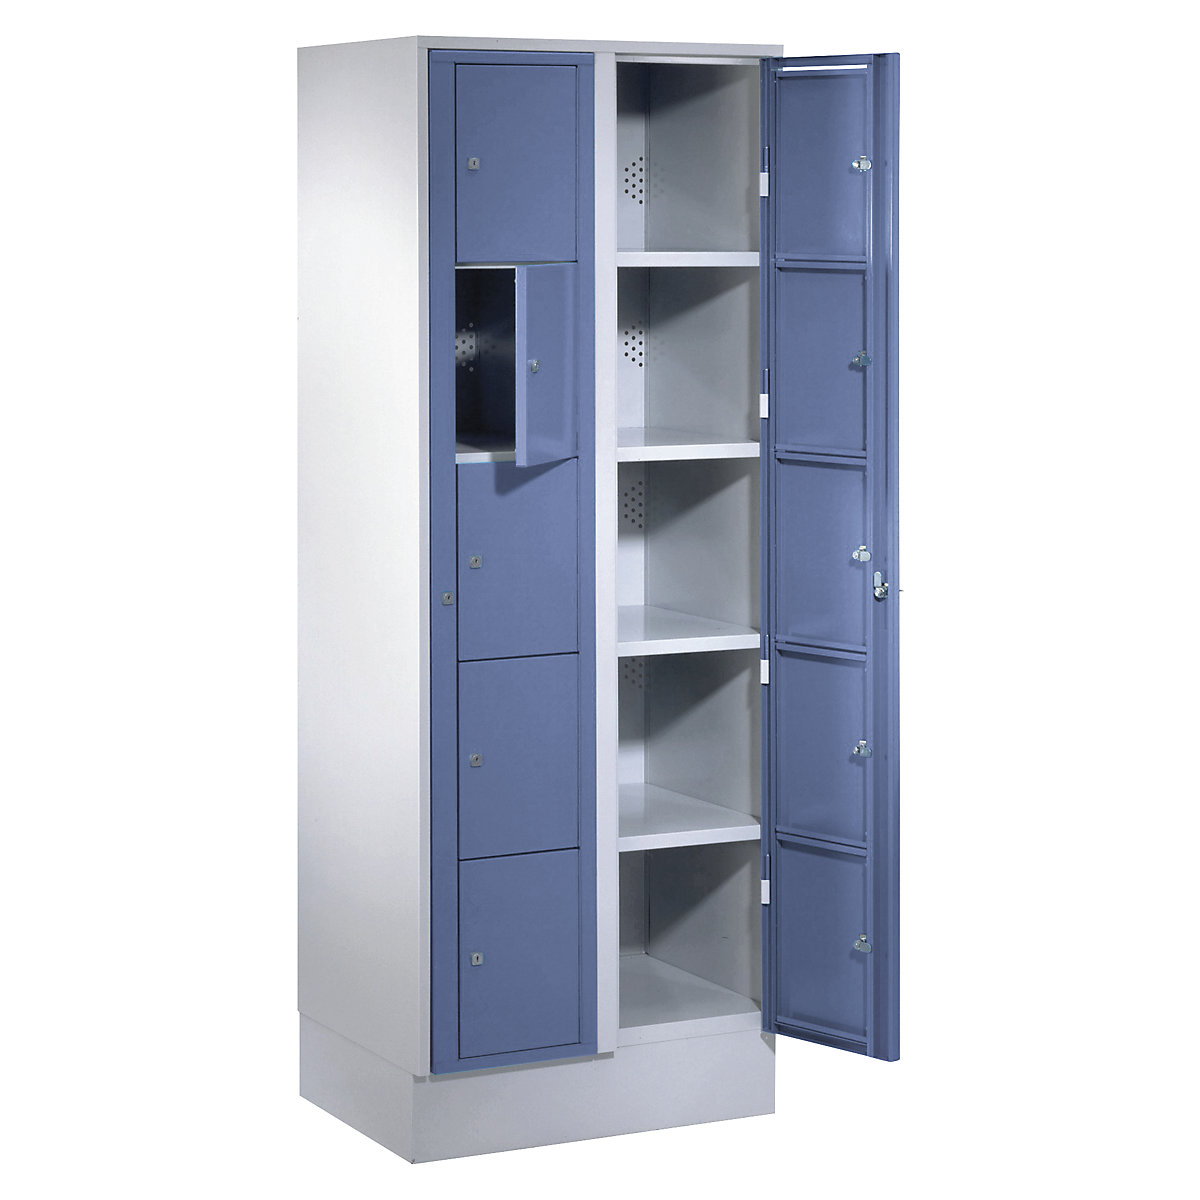 Armoire à linge – Wolf, h x l x p 1800 x 700 x 500 mm, 10 casiers, gris clair / bleu pigeon